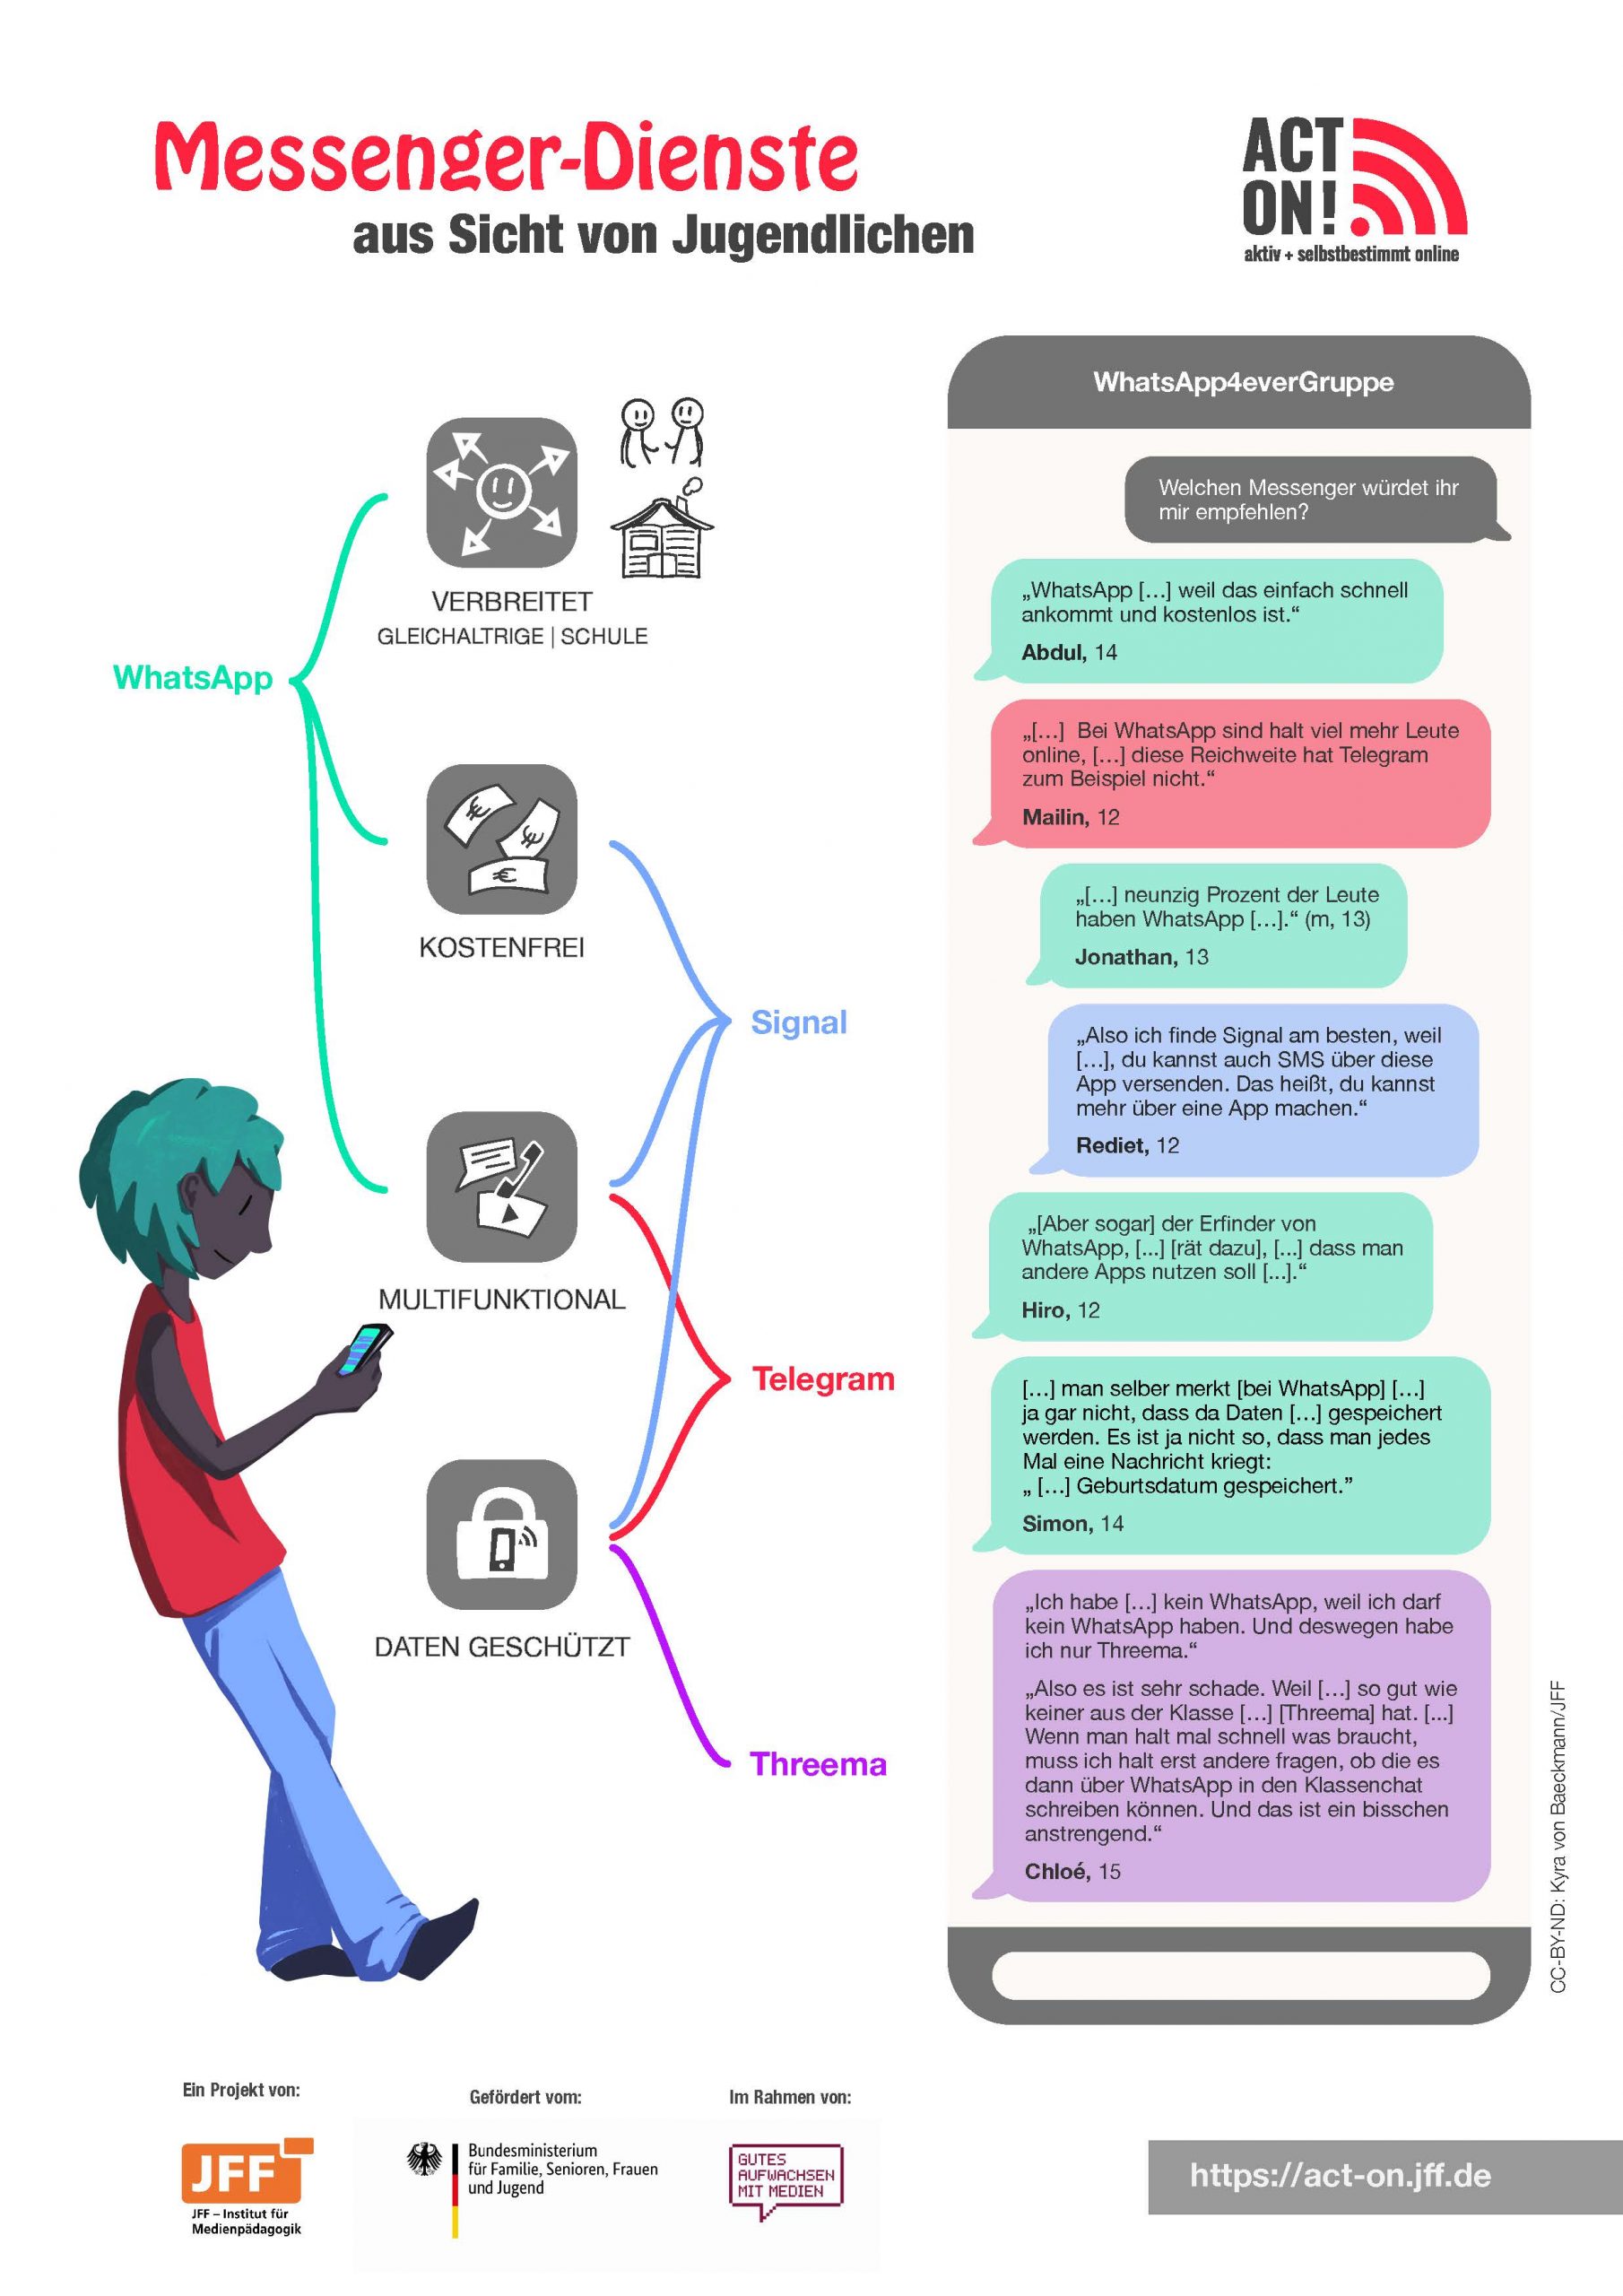 Grafik zum Thema Messenger-Dienste aus Sicht von Jugendlichen, die aus der Monitoring-Studie stammt